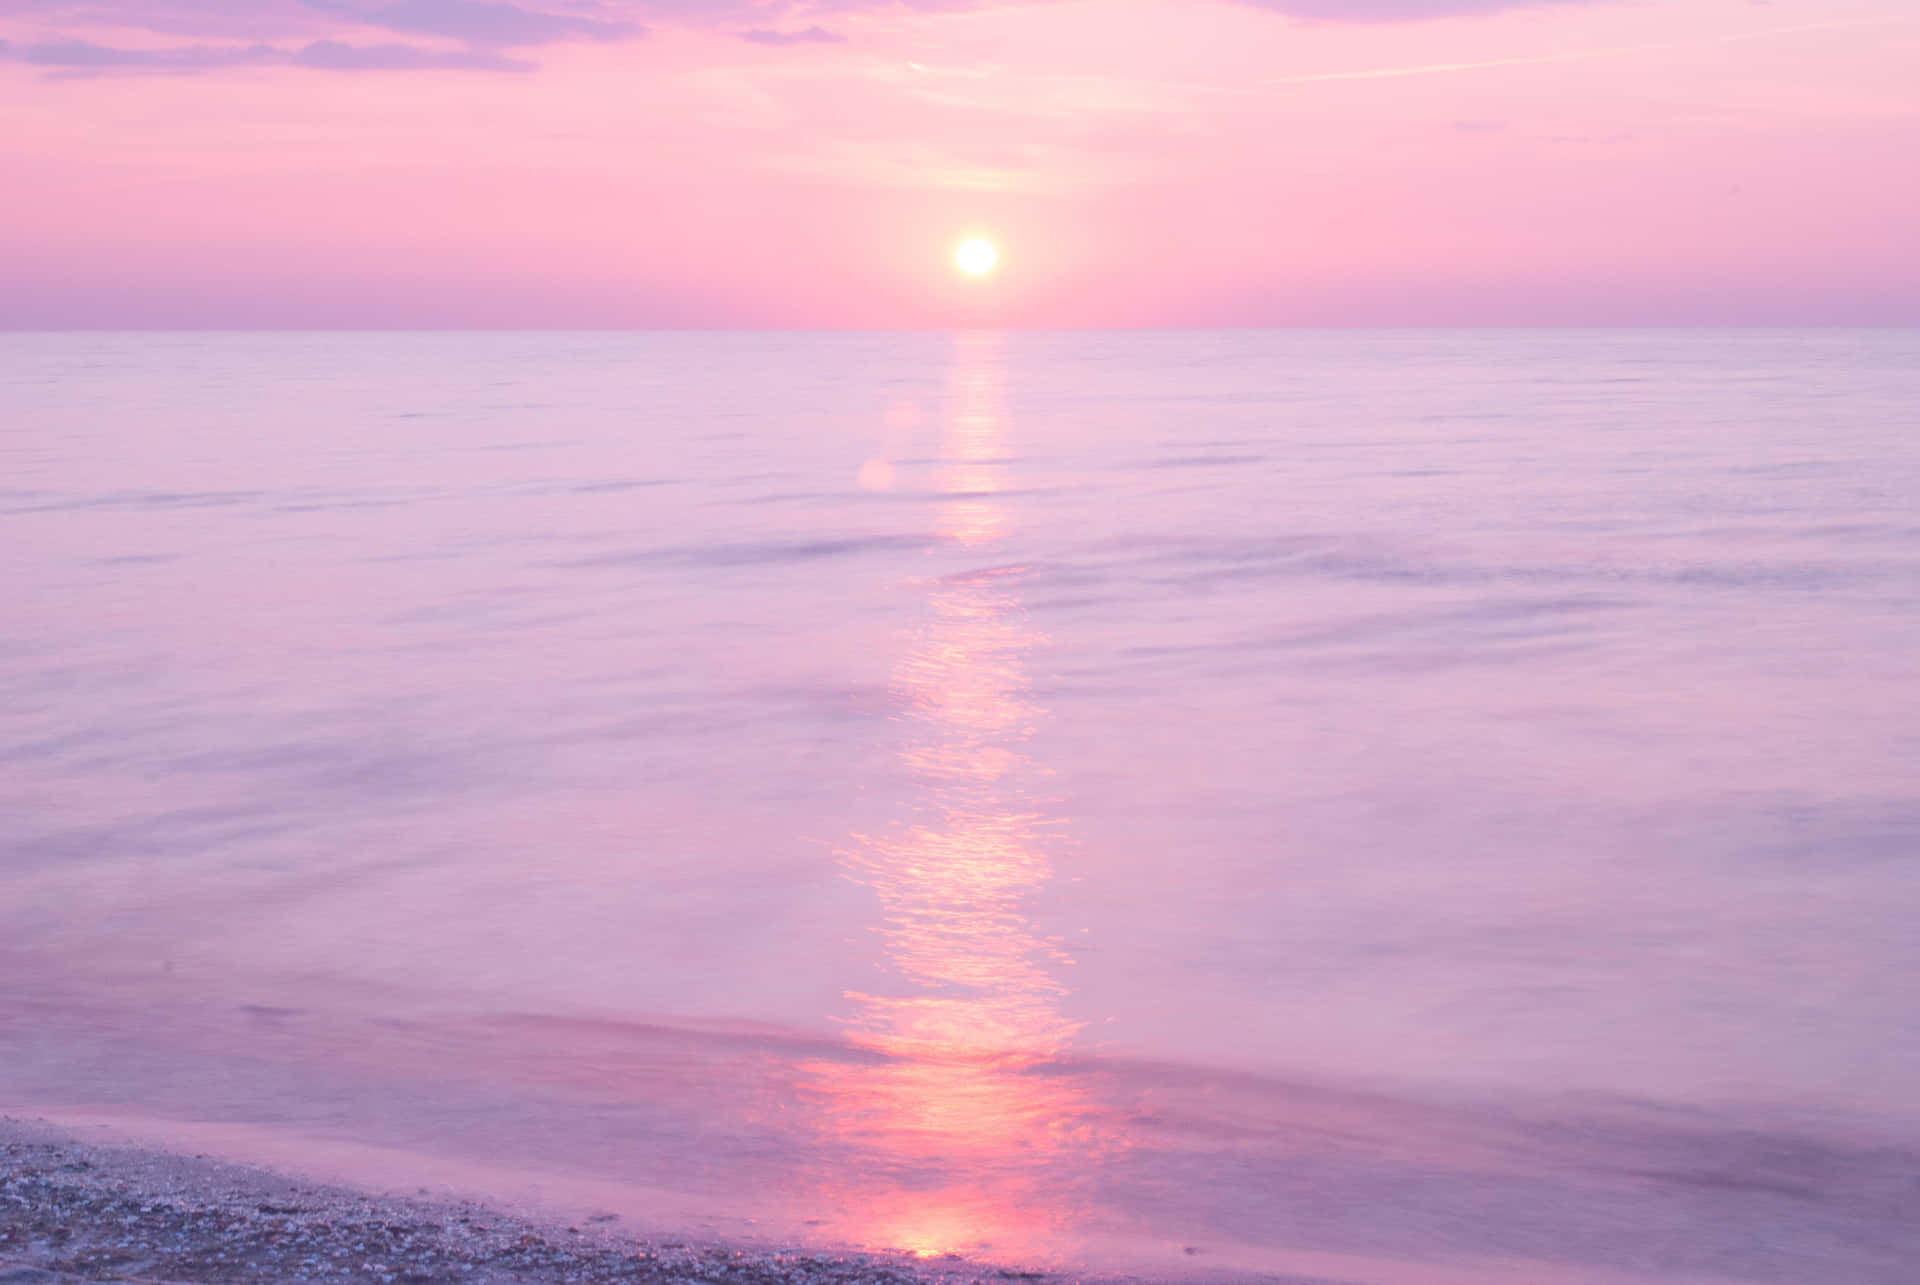 Himlen er lyse op med en smuk lyserød strand solnedgang. Wallpaper